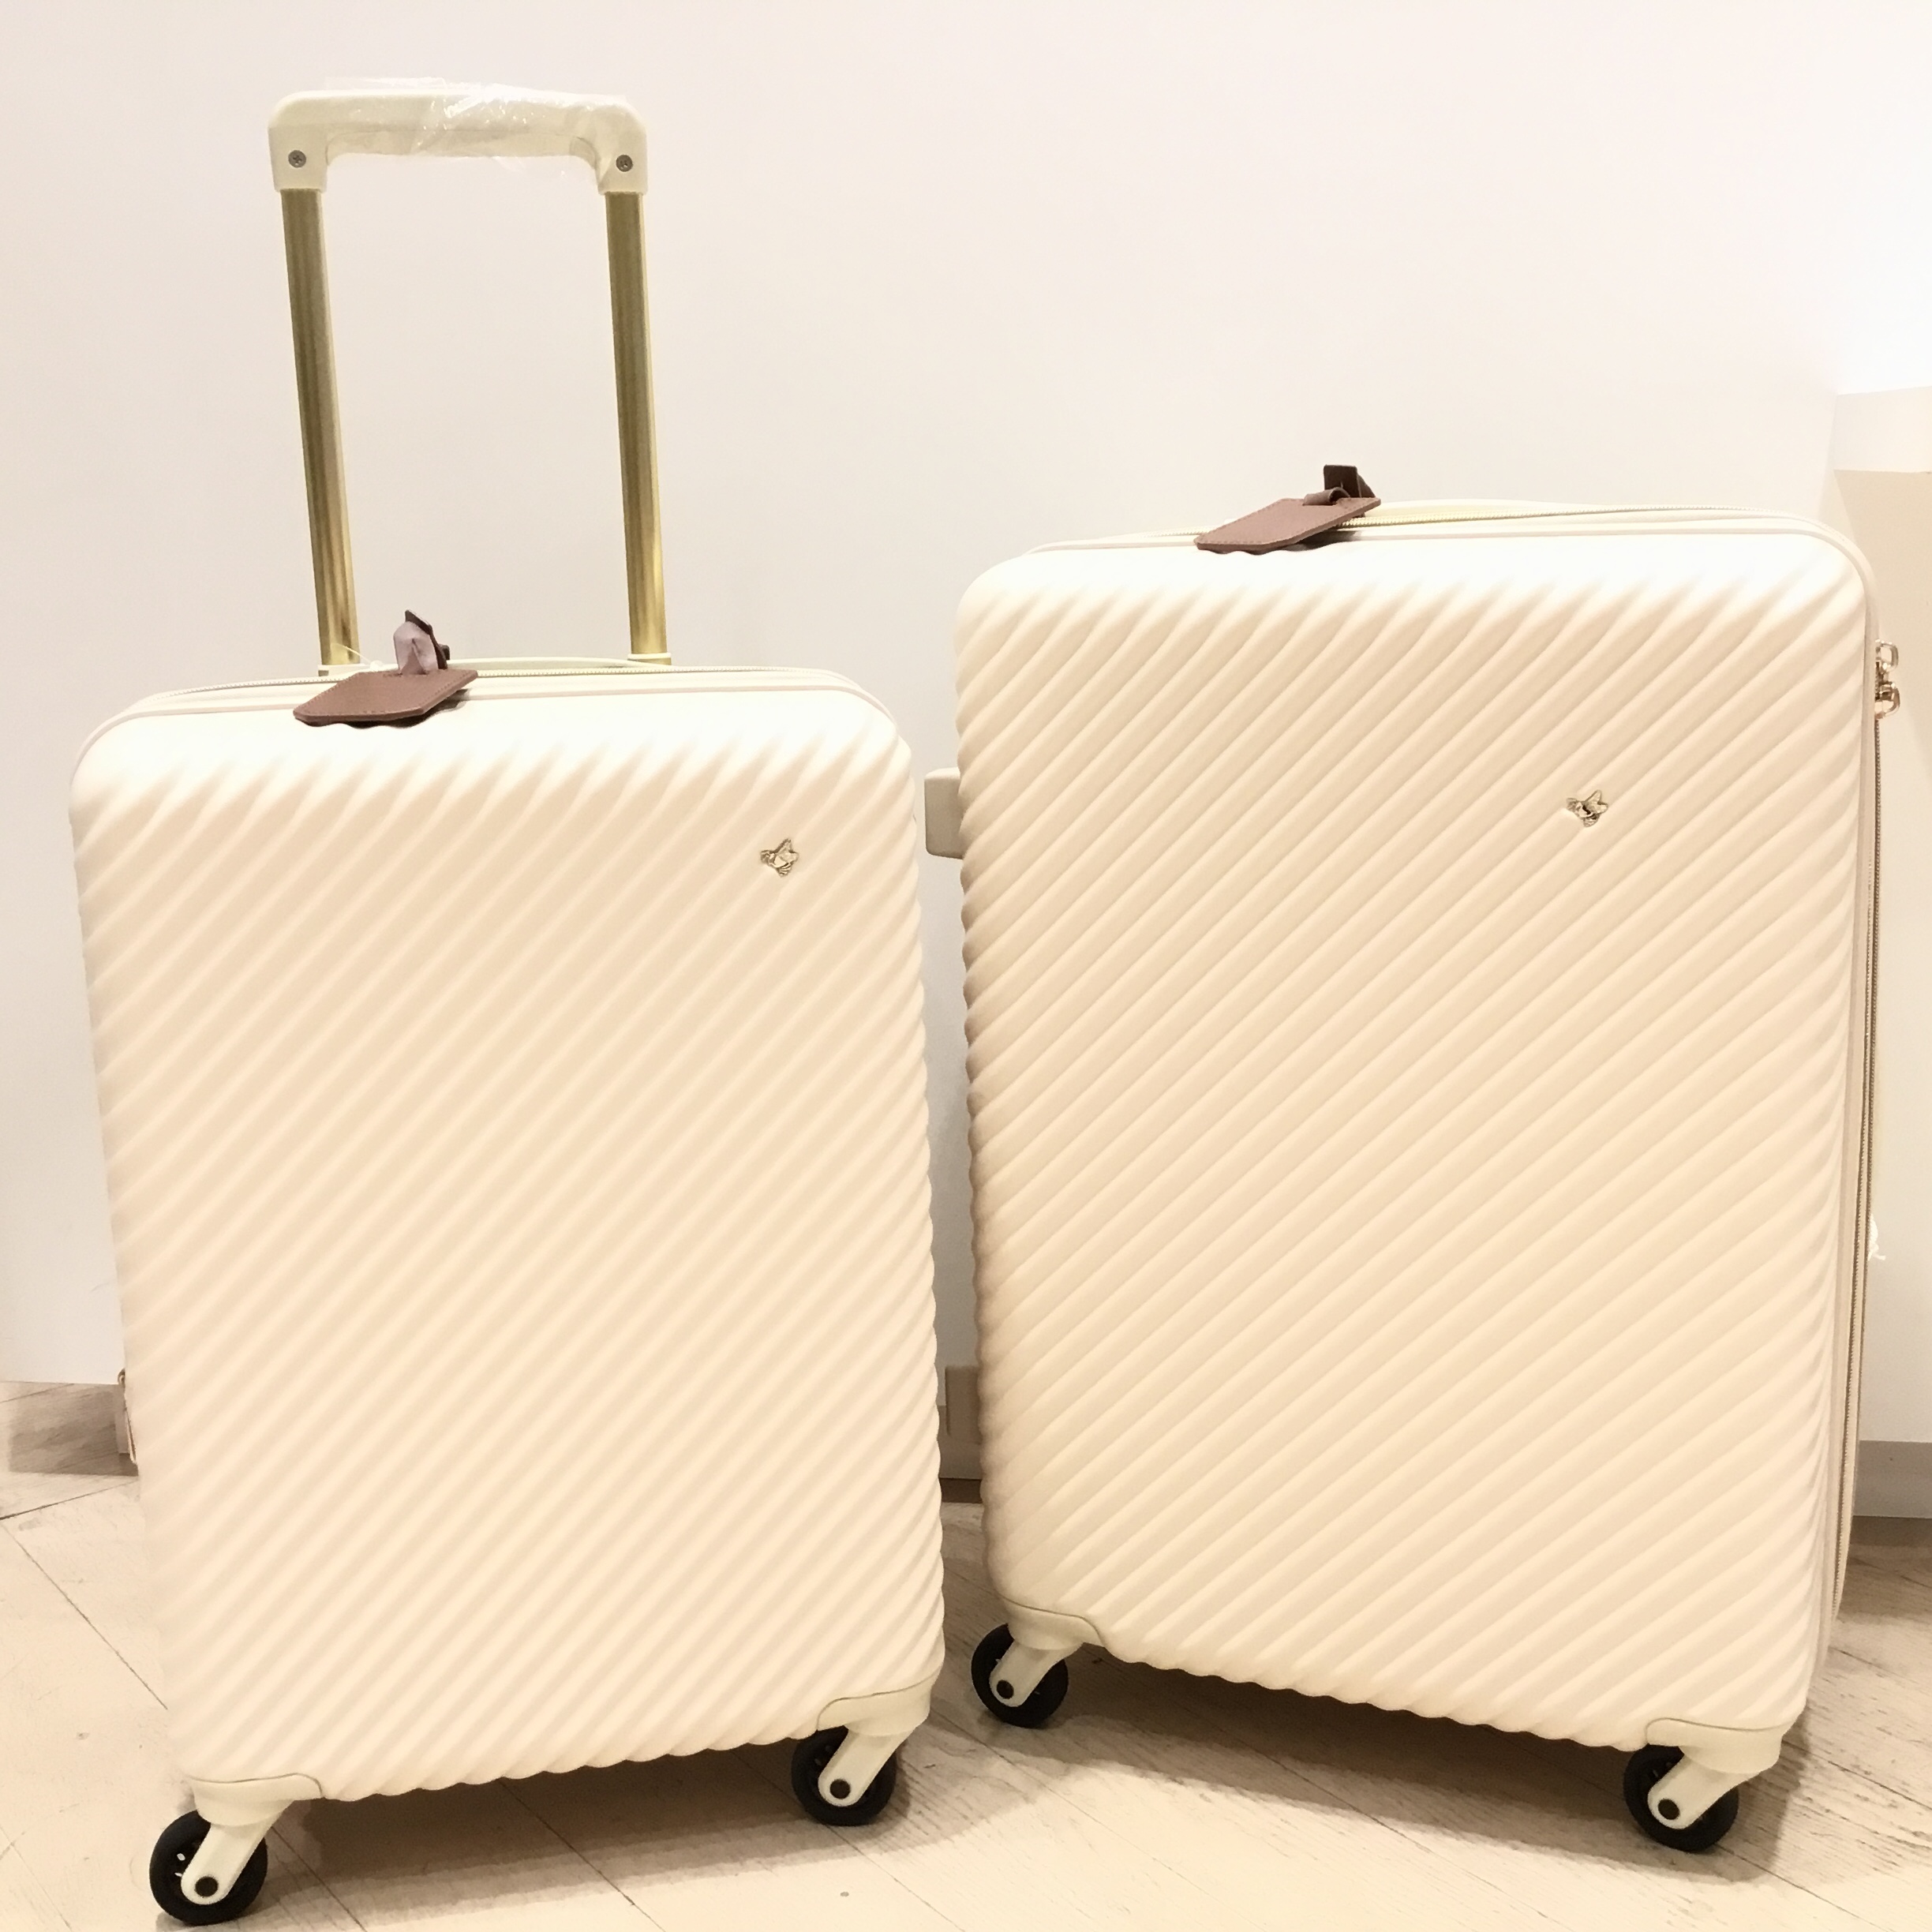 ジュエルナローズ✕ハントマイン スーツケース - バッグ